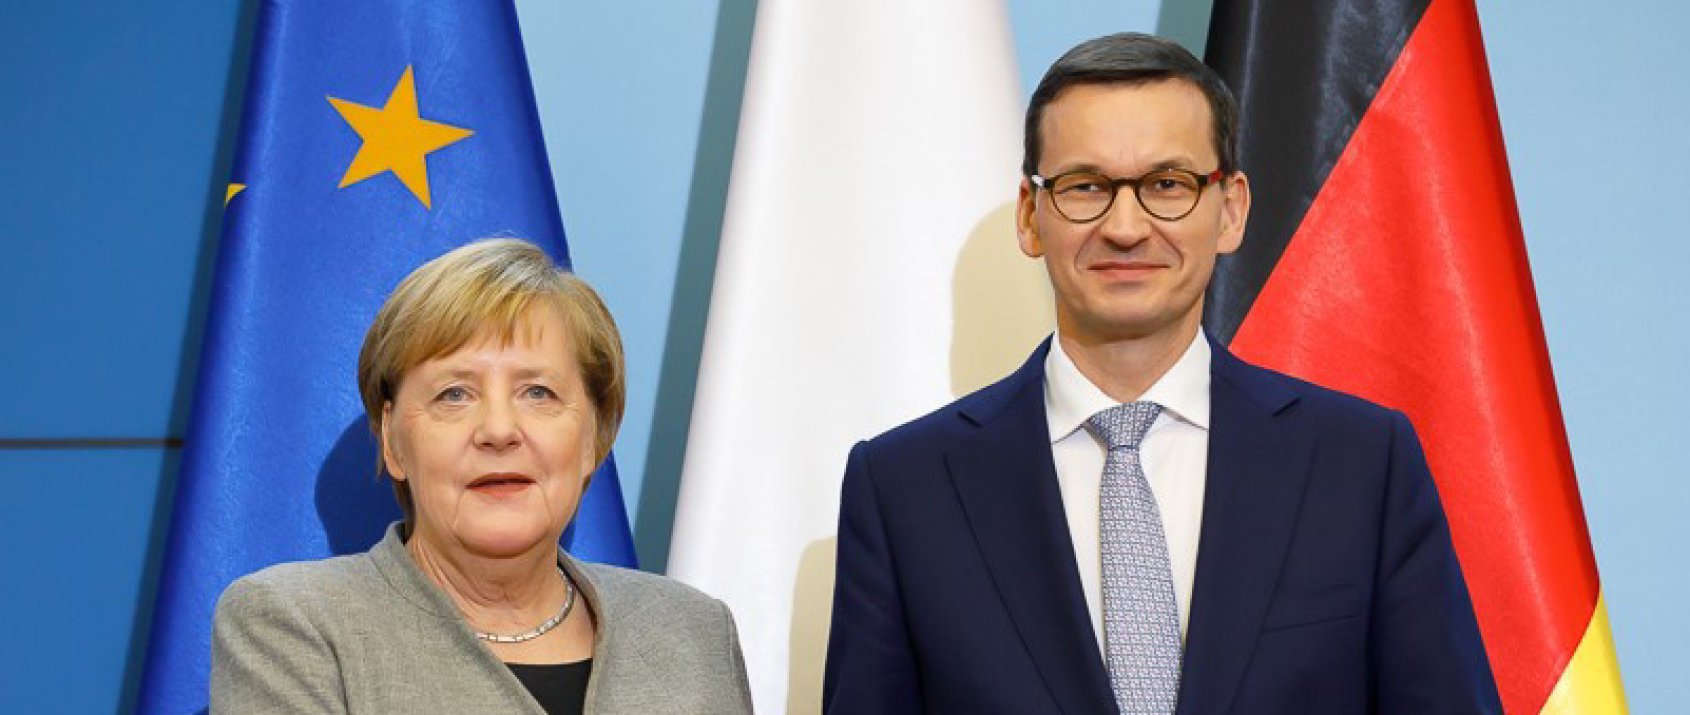 Komentujemy polsko-niemieckie konsultacje międzyrządowe